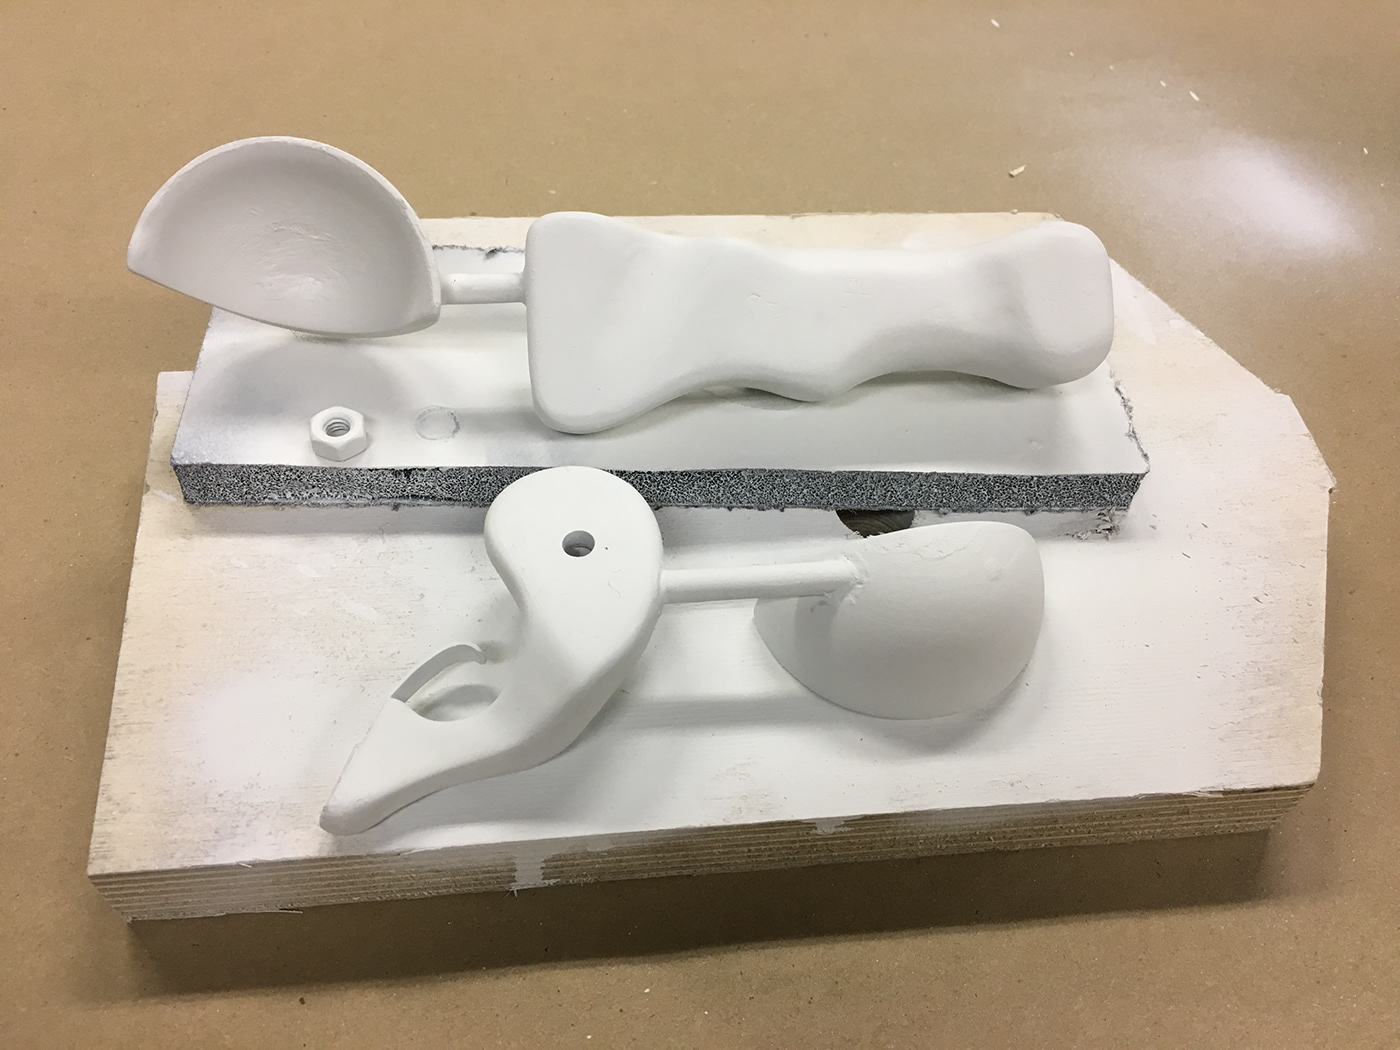 ice cream scoop product design  cavare redesign clean trigger 3D print paint